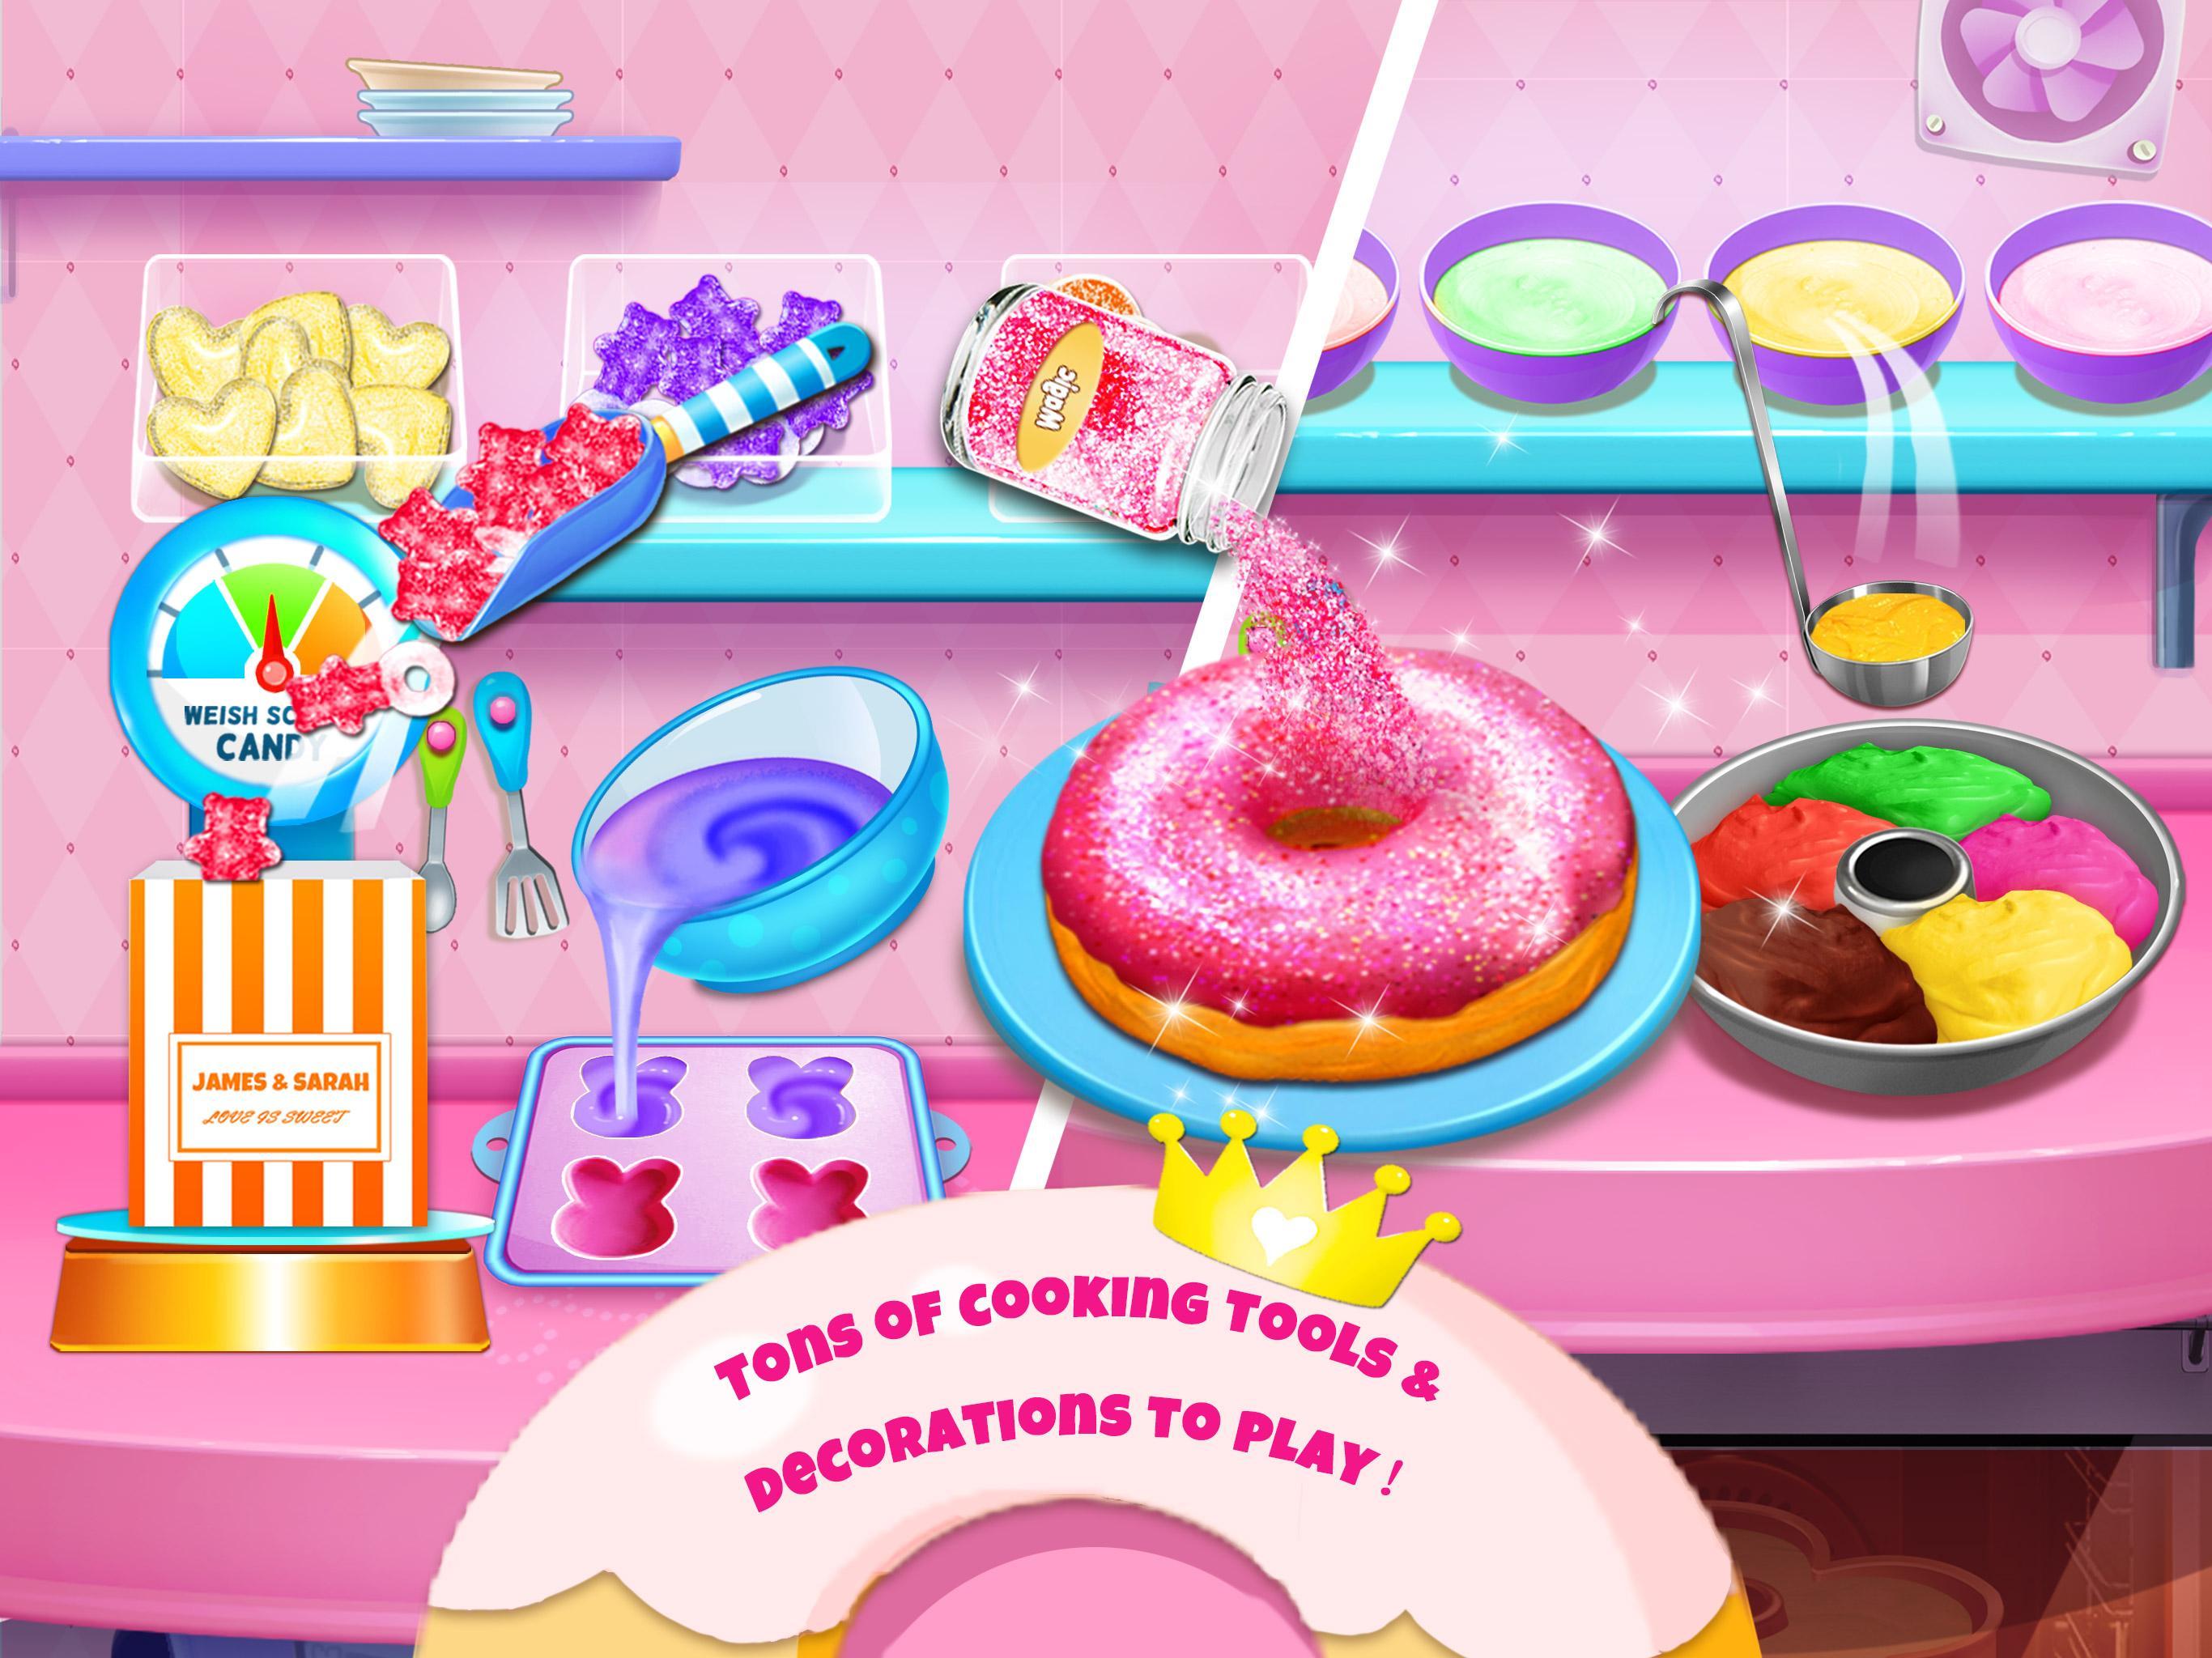 Sparkle Princess Candy Shop - Glitter Desserts!のキャプチャ